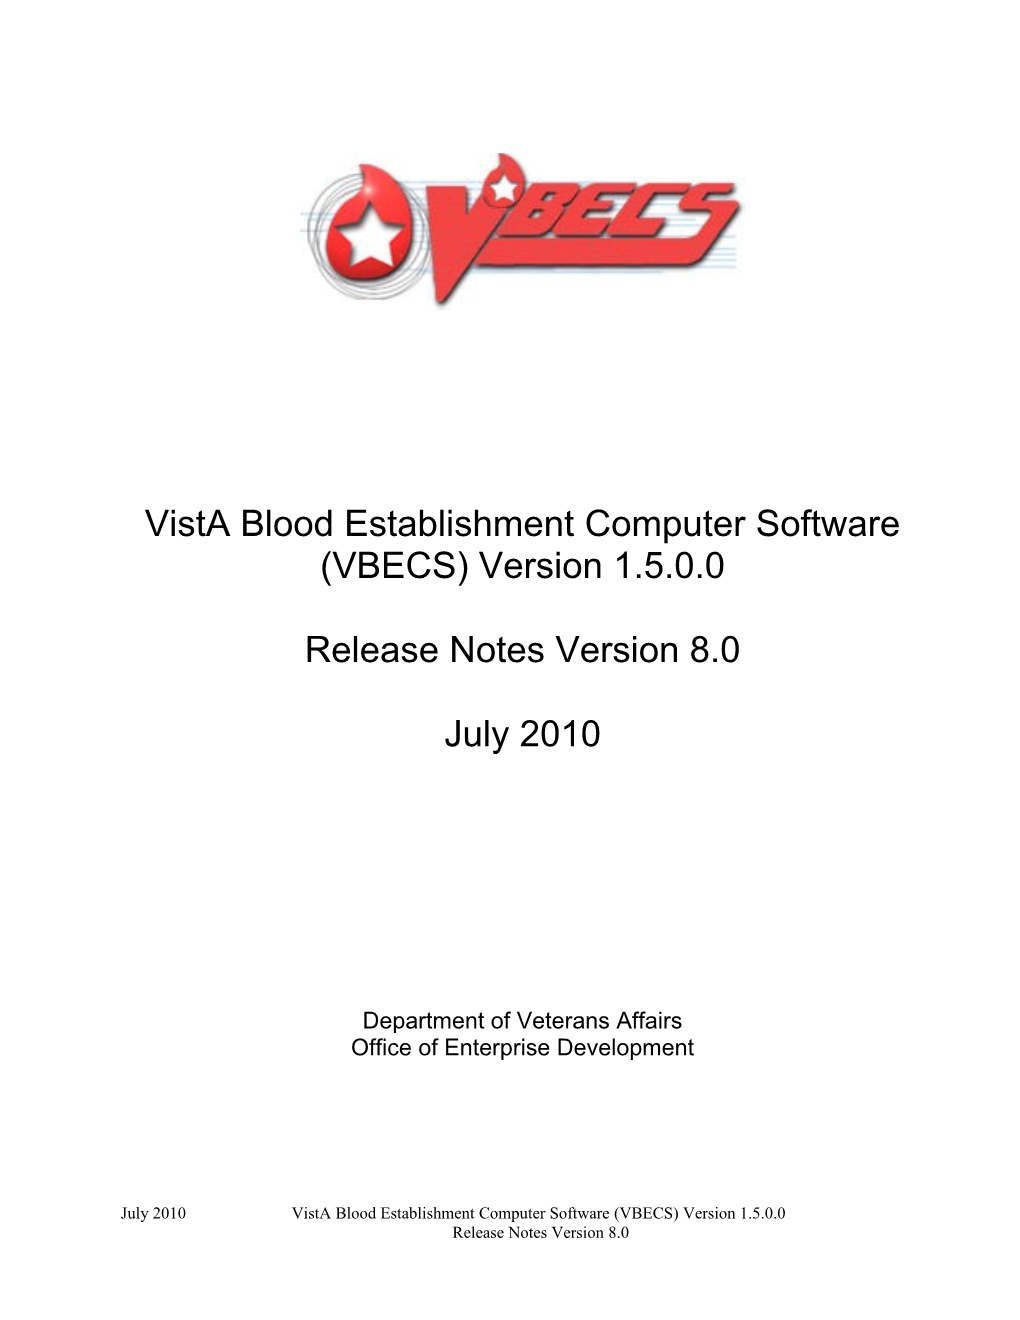 VBECS Release Notes